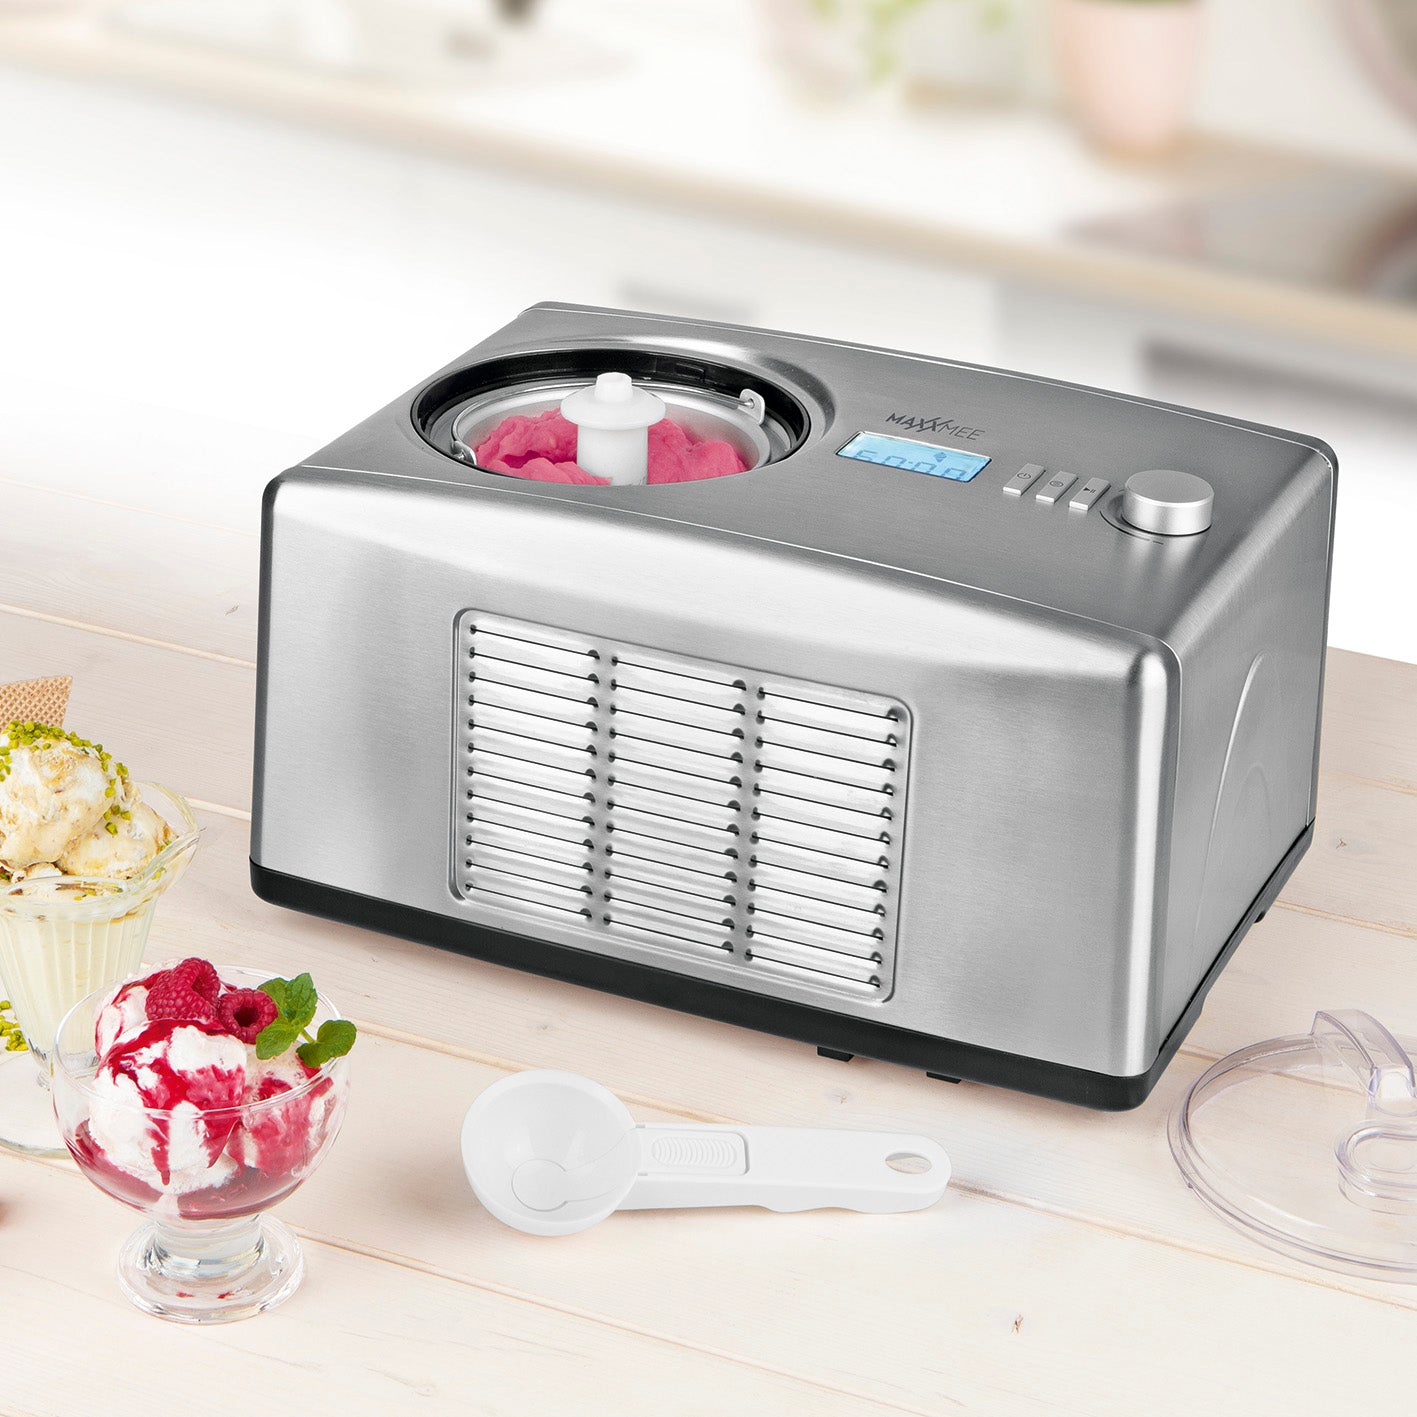 Eismaschine - Zubereitung von bis zu 1,5 l Milcheis, Fruchteis & Co. - Edelstahl